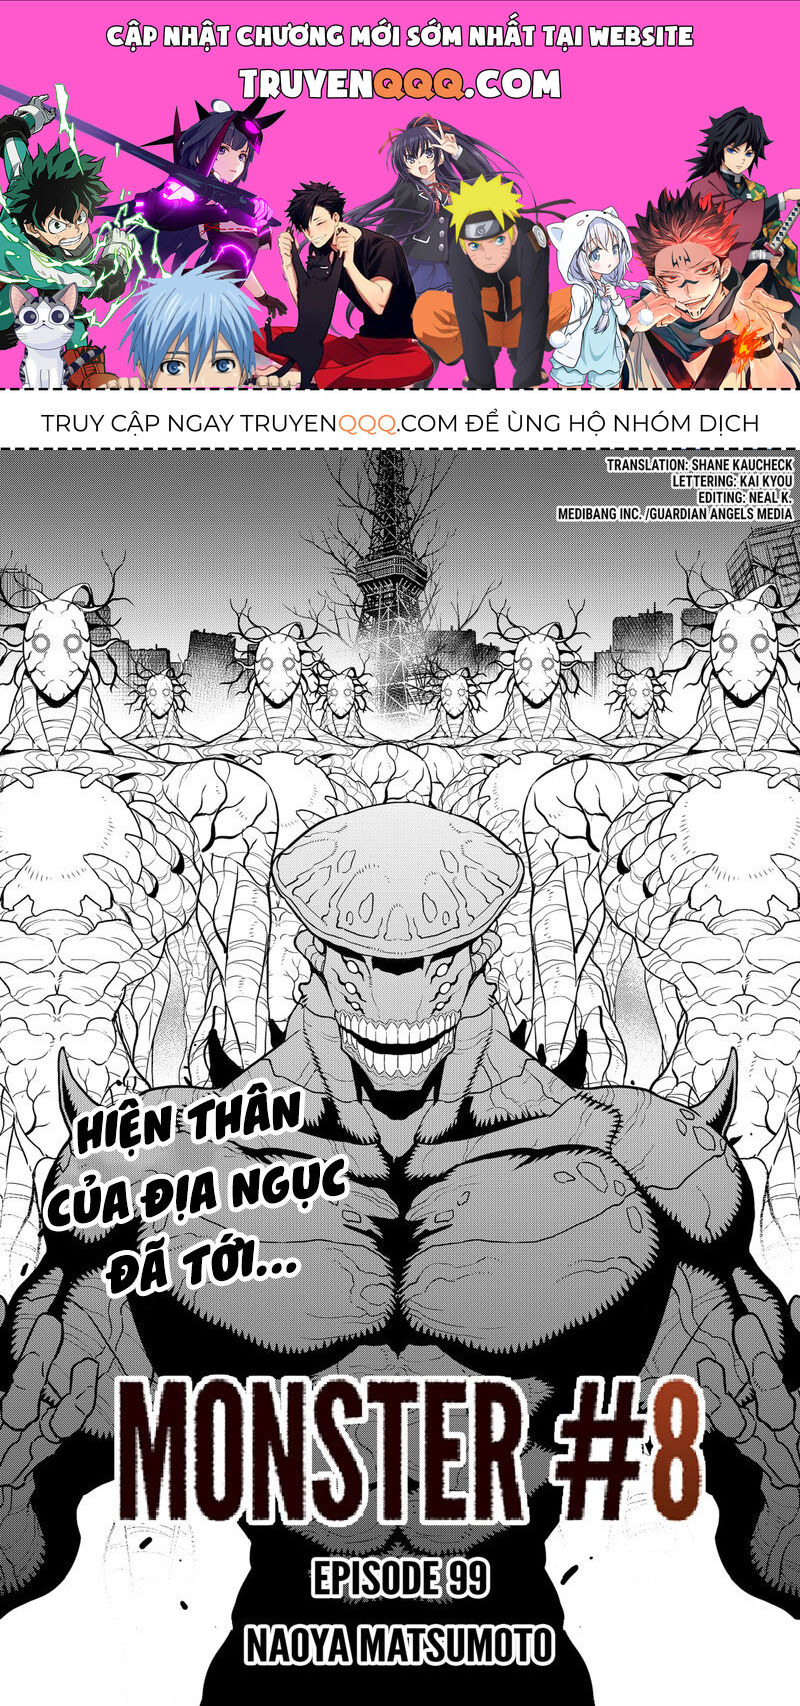 Truyện khủng - Hôm Nay - Tôi Hóa Kaiju